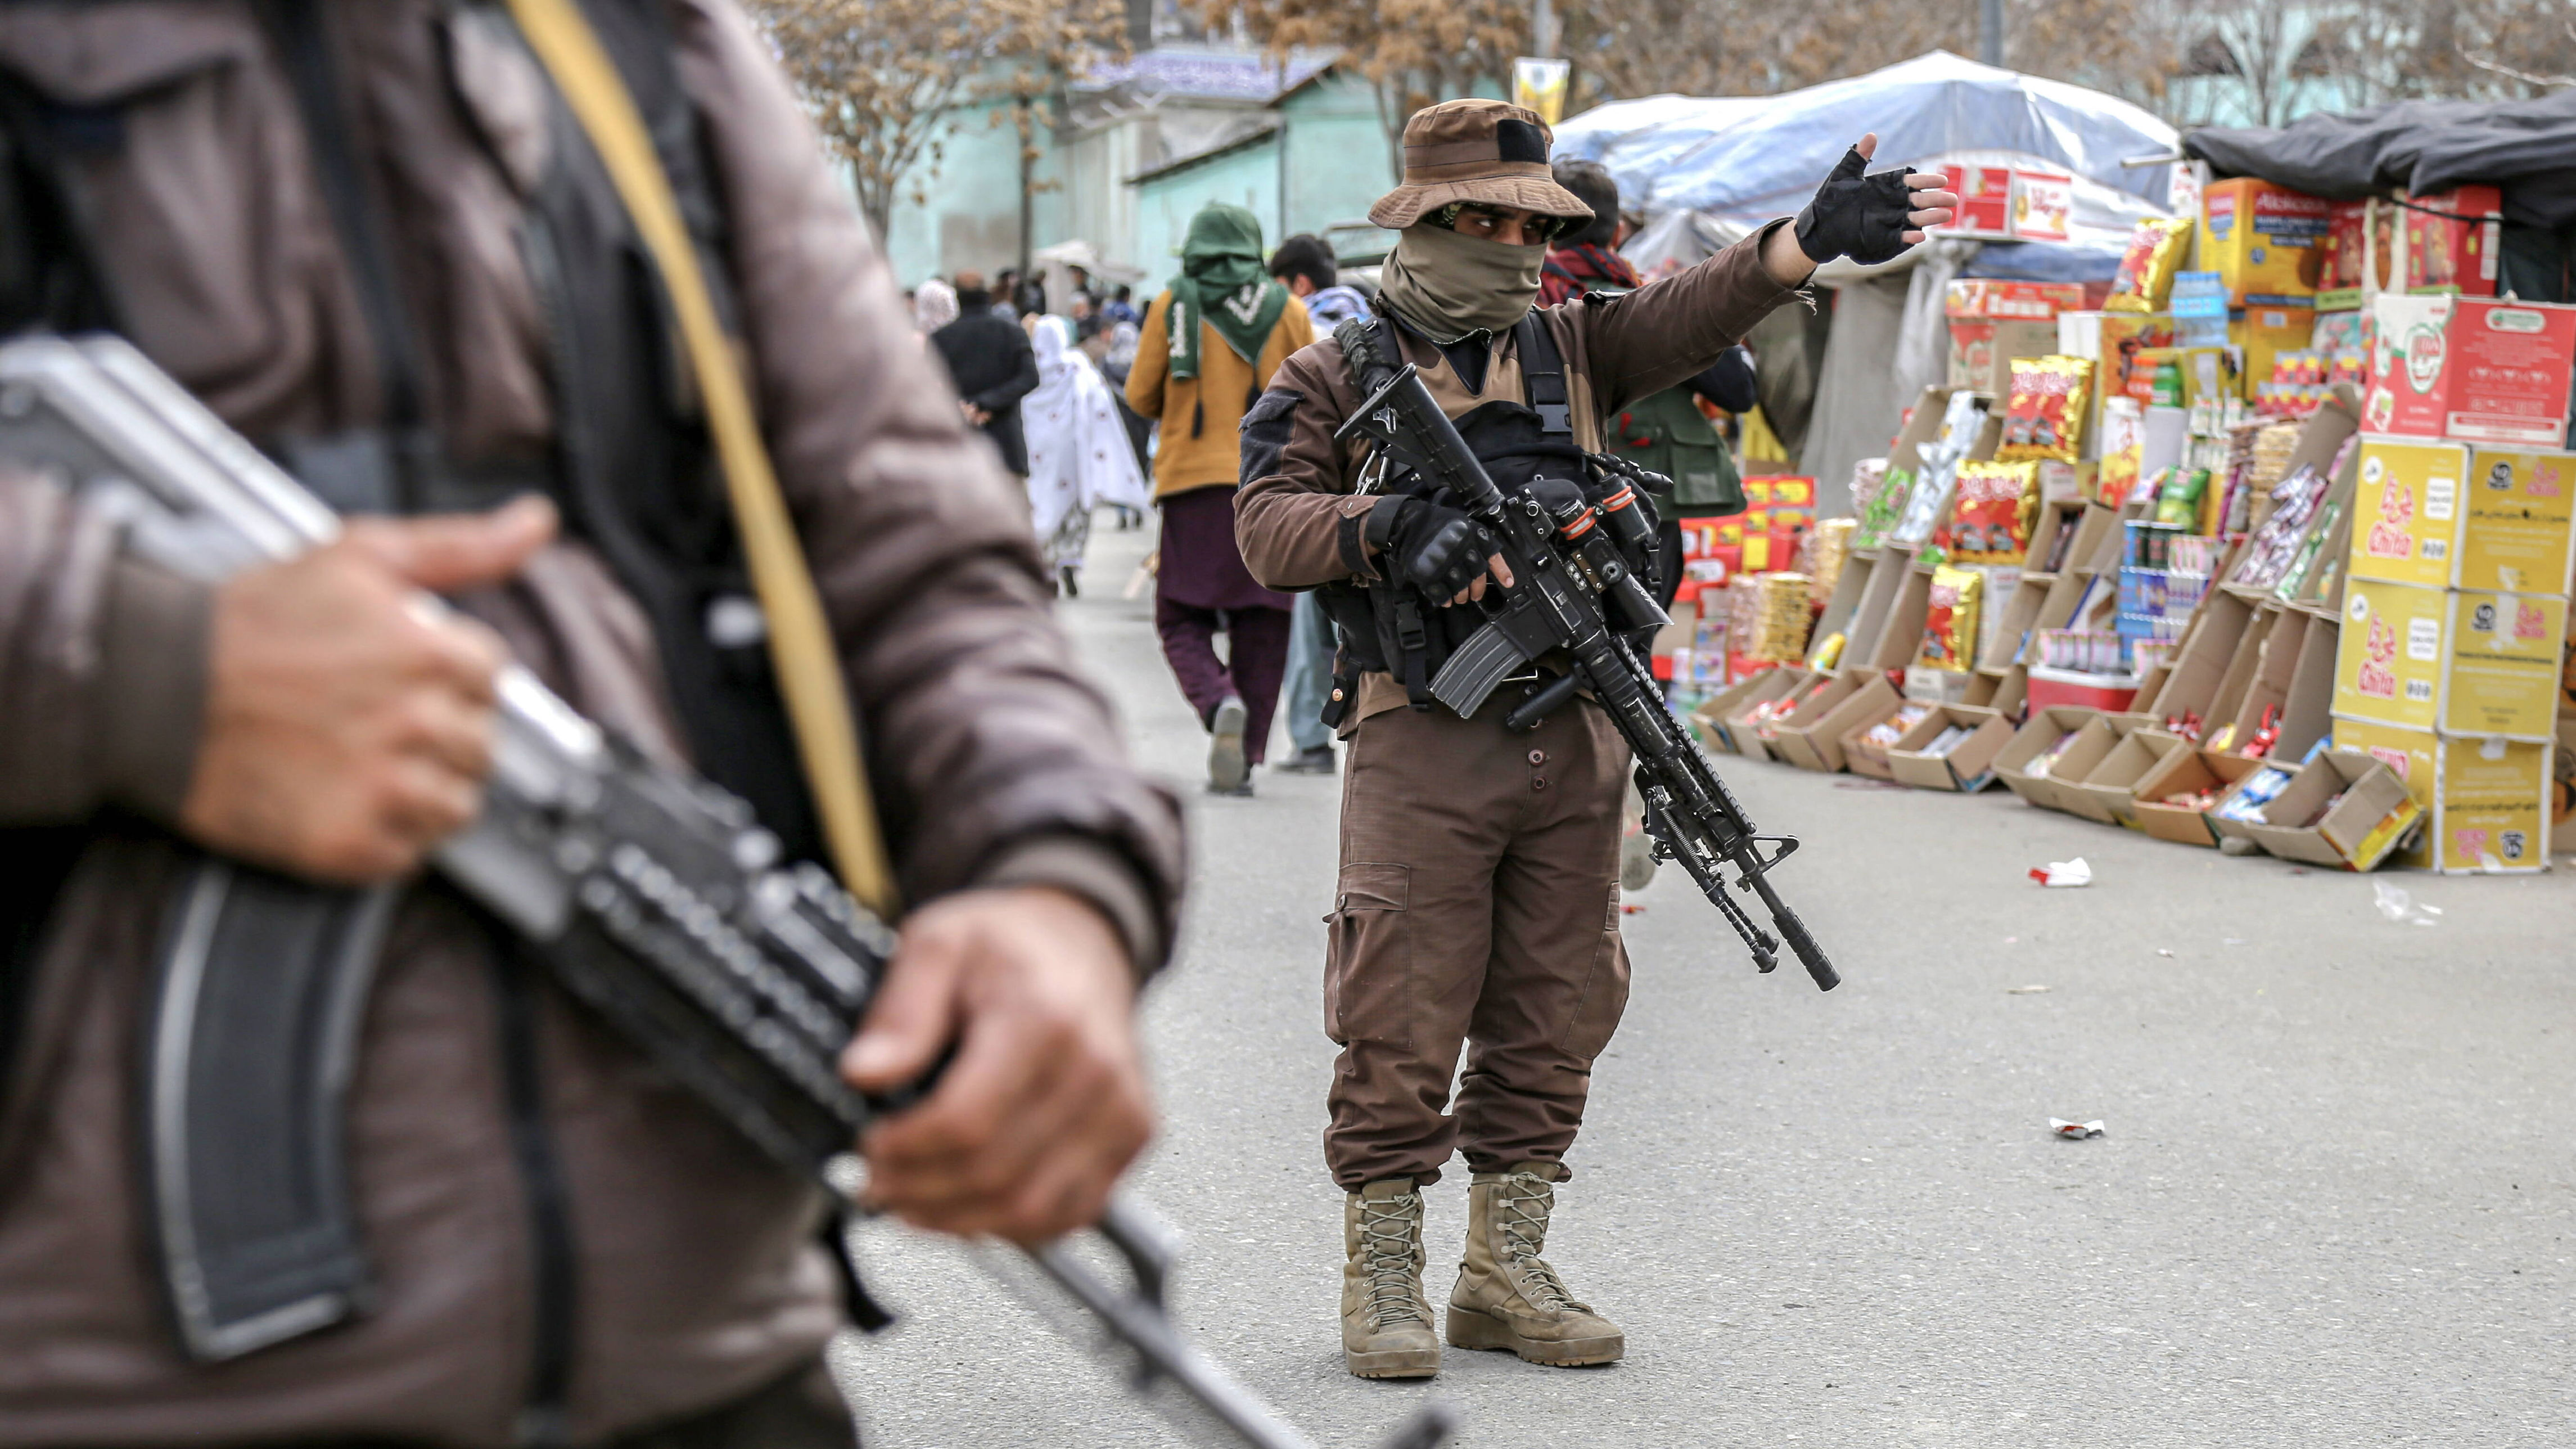 talibowie pomogą rosji? afganistan chce się stać hubem logistycznym